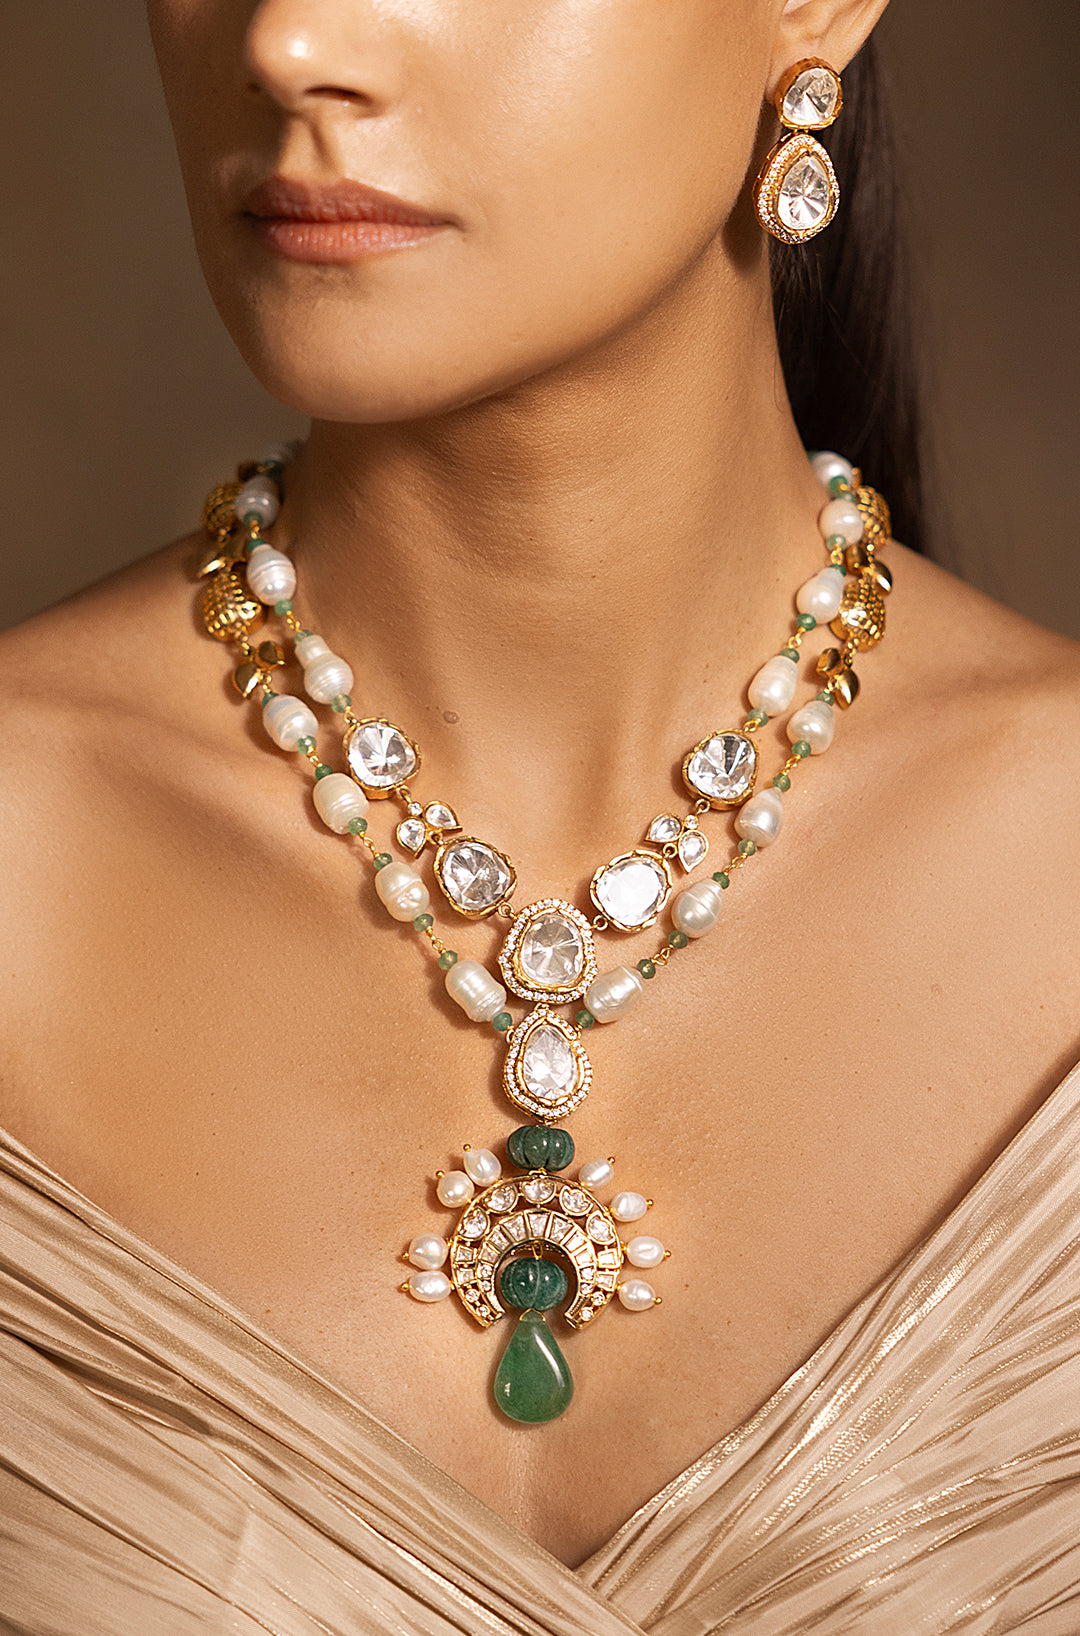 Stylish Green-White-Golden Necklace Set